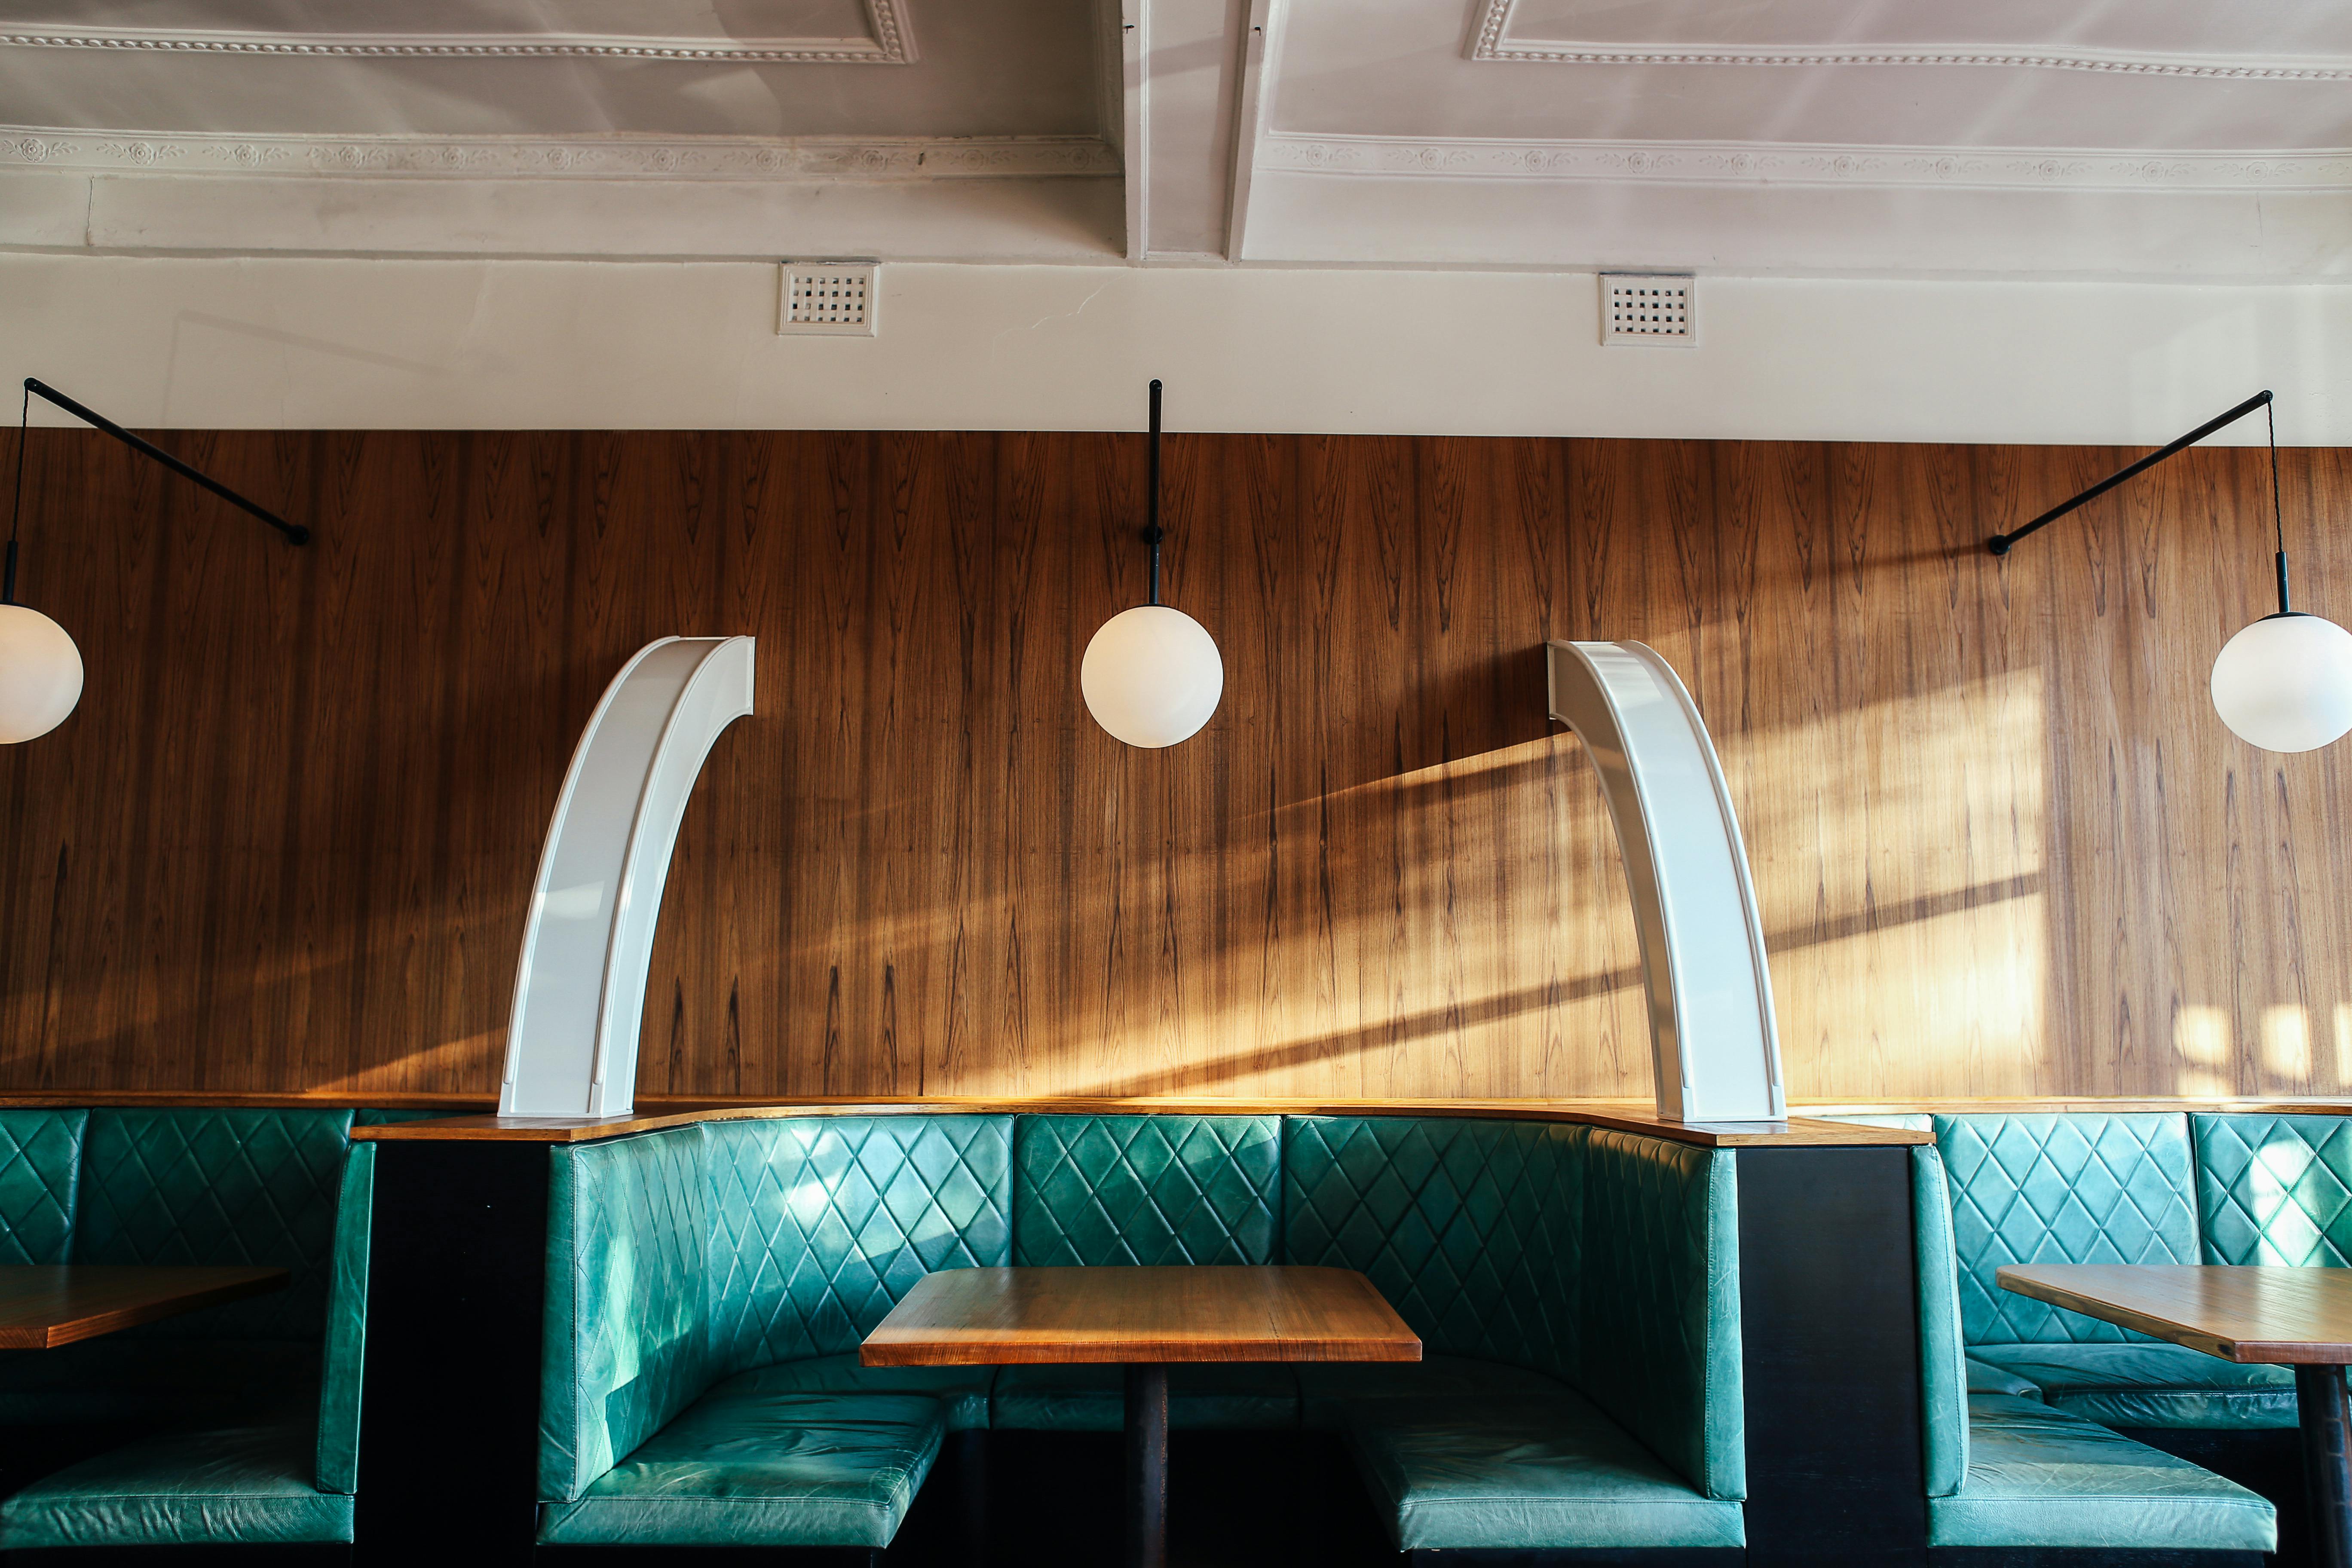 Inside of a diner | Source: Pexels